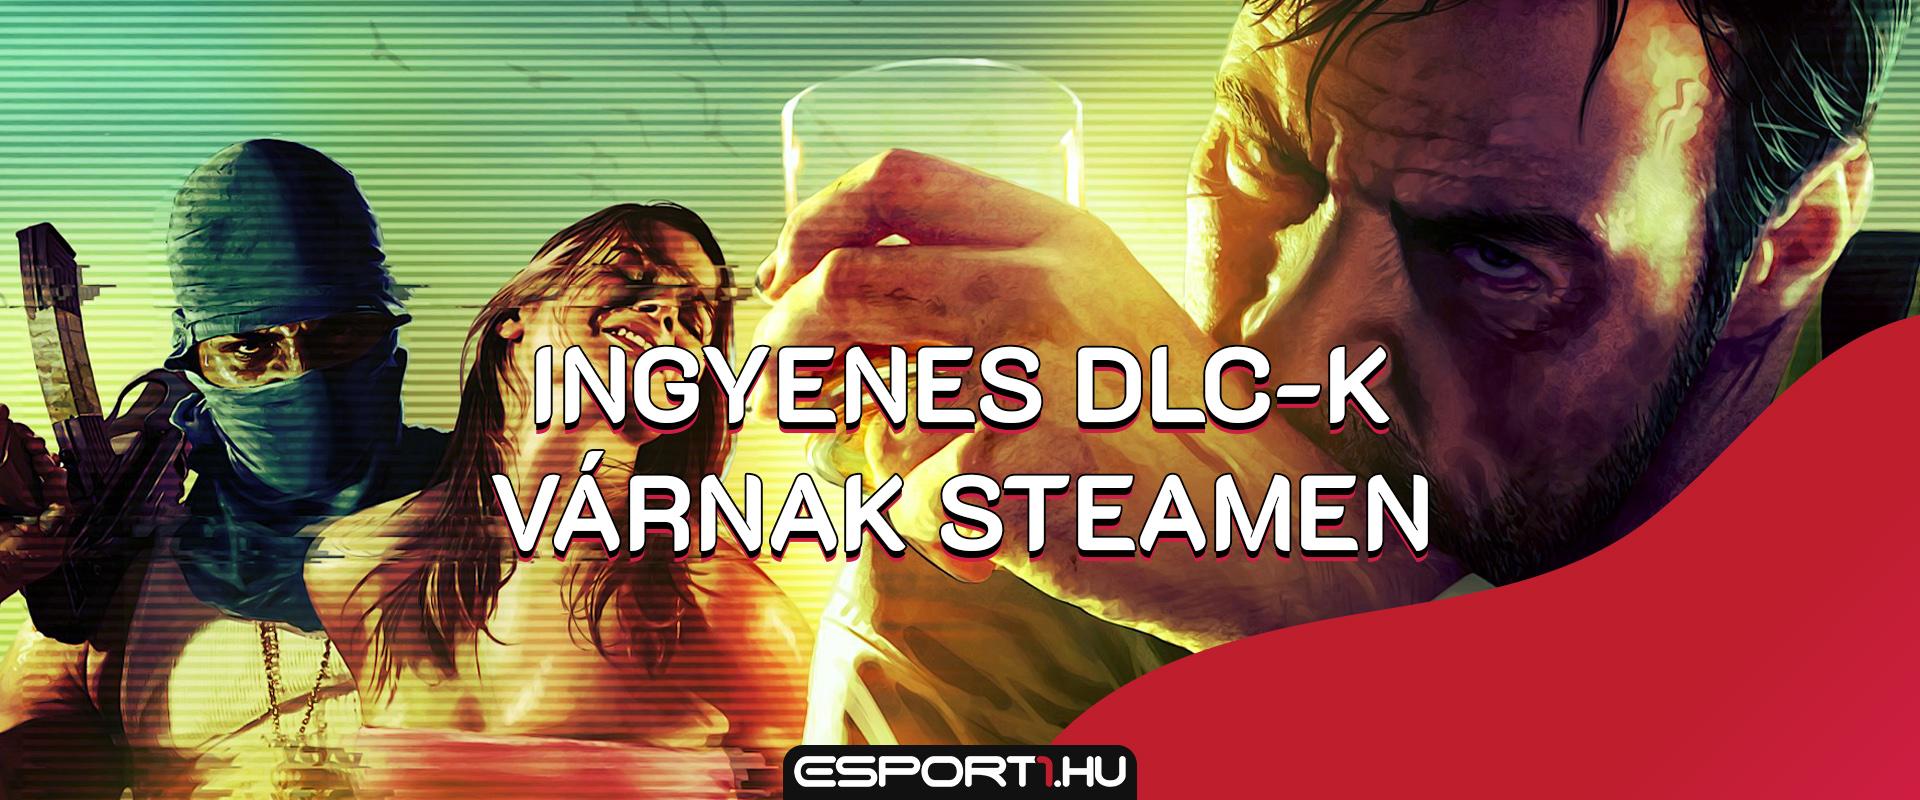 Akciófigyelő: Ingyenes DLC-kkel támad Steamen a Rockstar Games